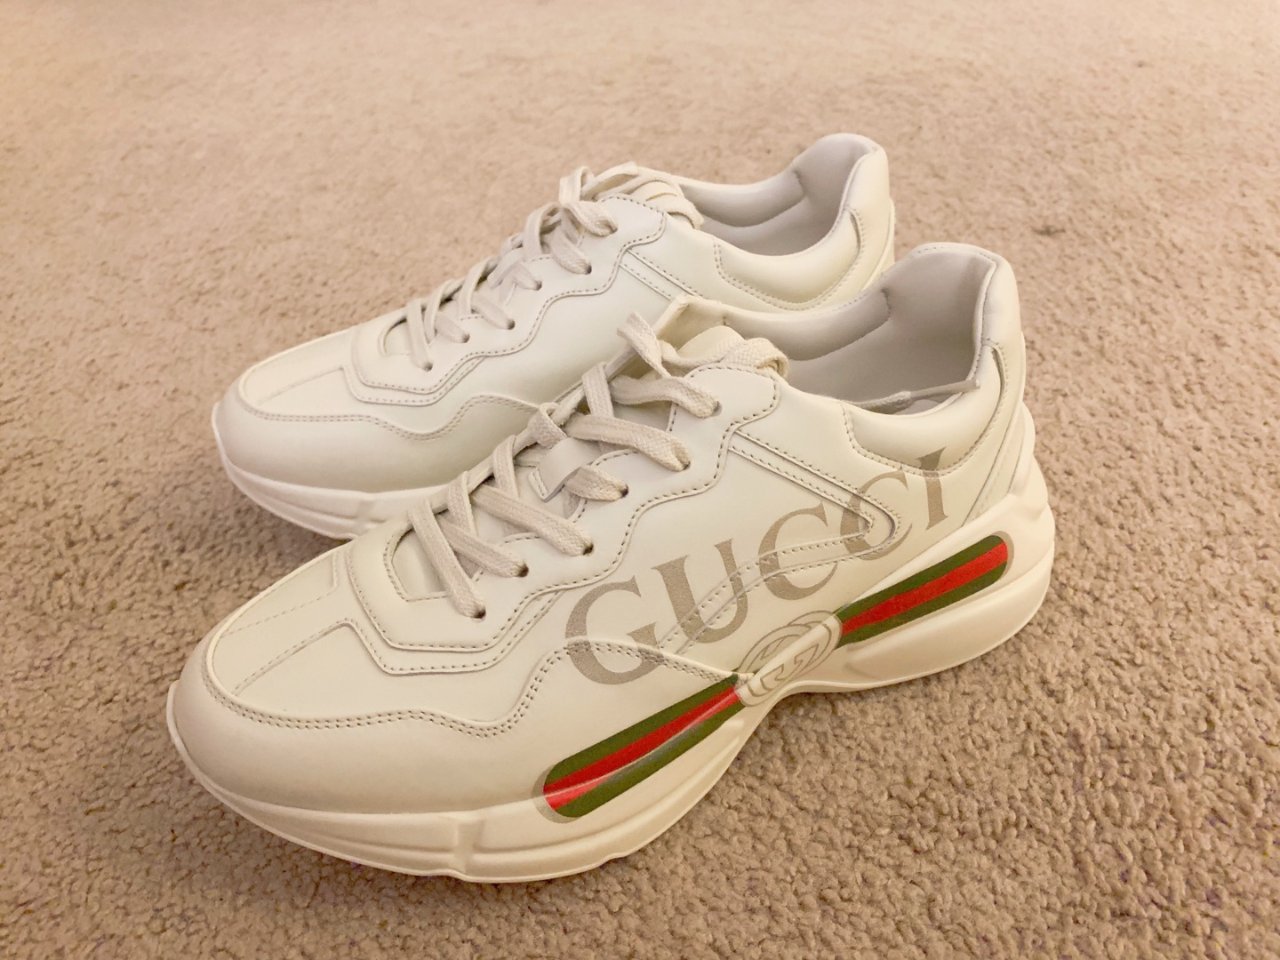 Gucci 古驰,老爹鞋